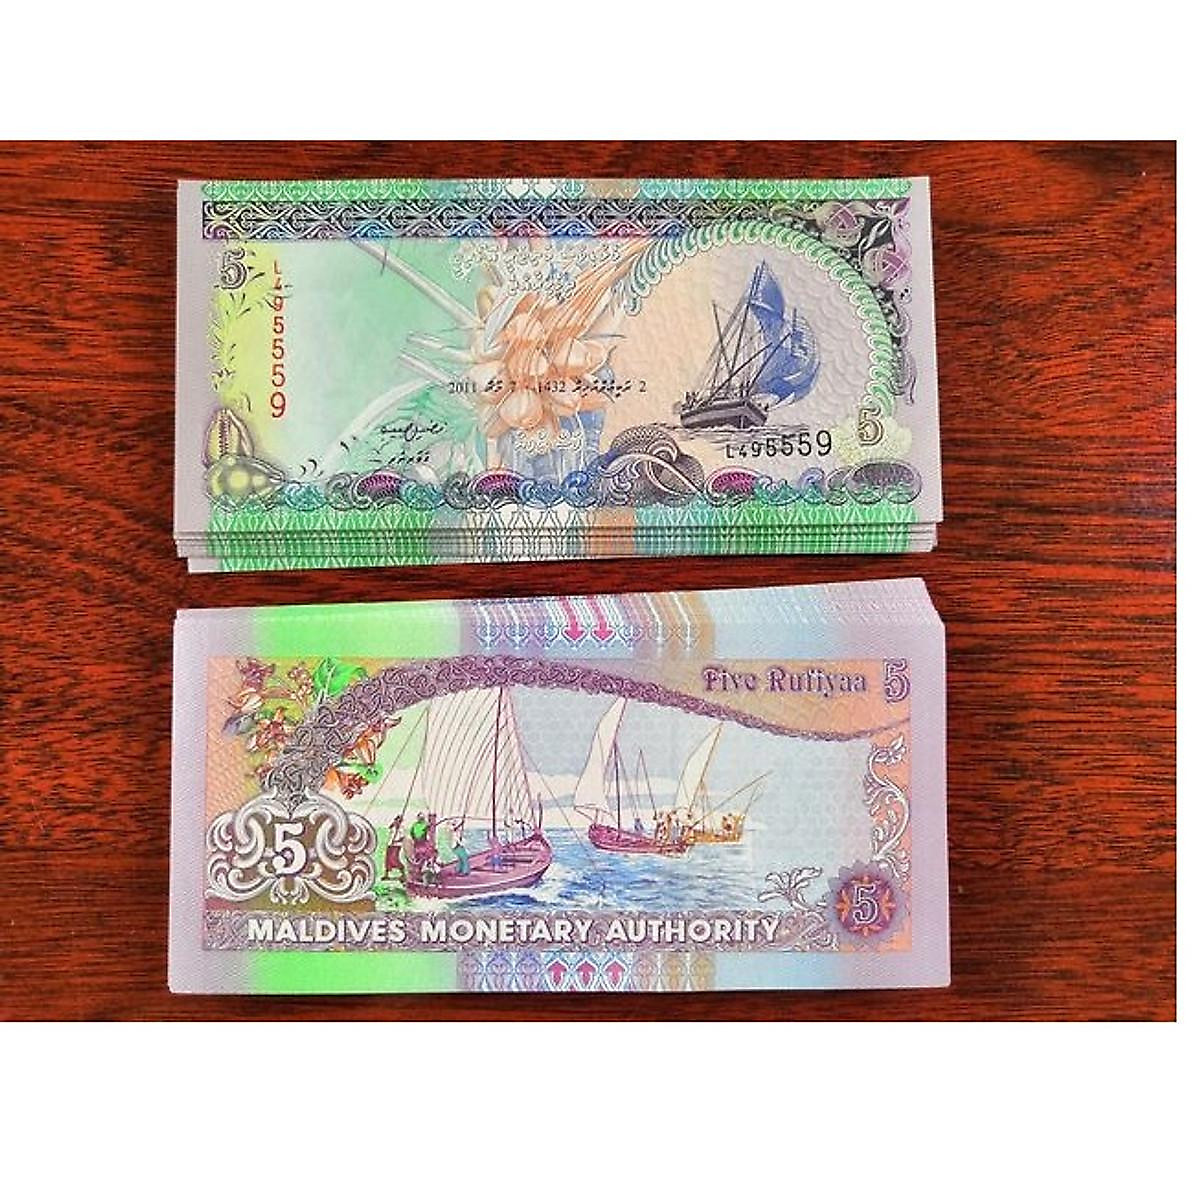 Tờ tiền Maldives: Khám phá tấm vé vào cổng thiên đường Maldives thông qua tờ tiền độc đáo và đầy màu sắc này. Hãy nhìn vào hình ảnh và cảm nhận sự tươi trẻ, phong cách và tinh tế từ đất nước Maldives đẹp như mơ.